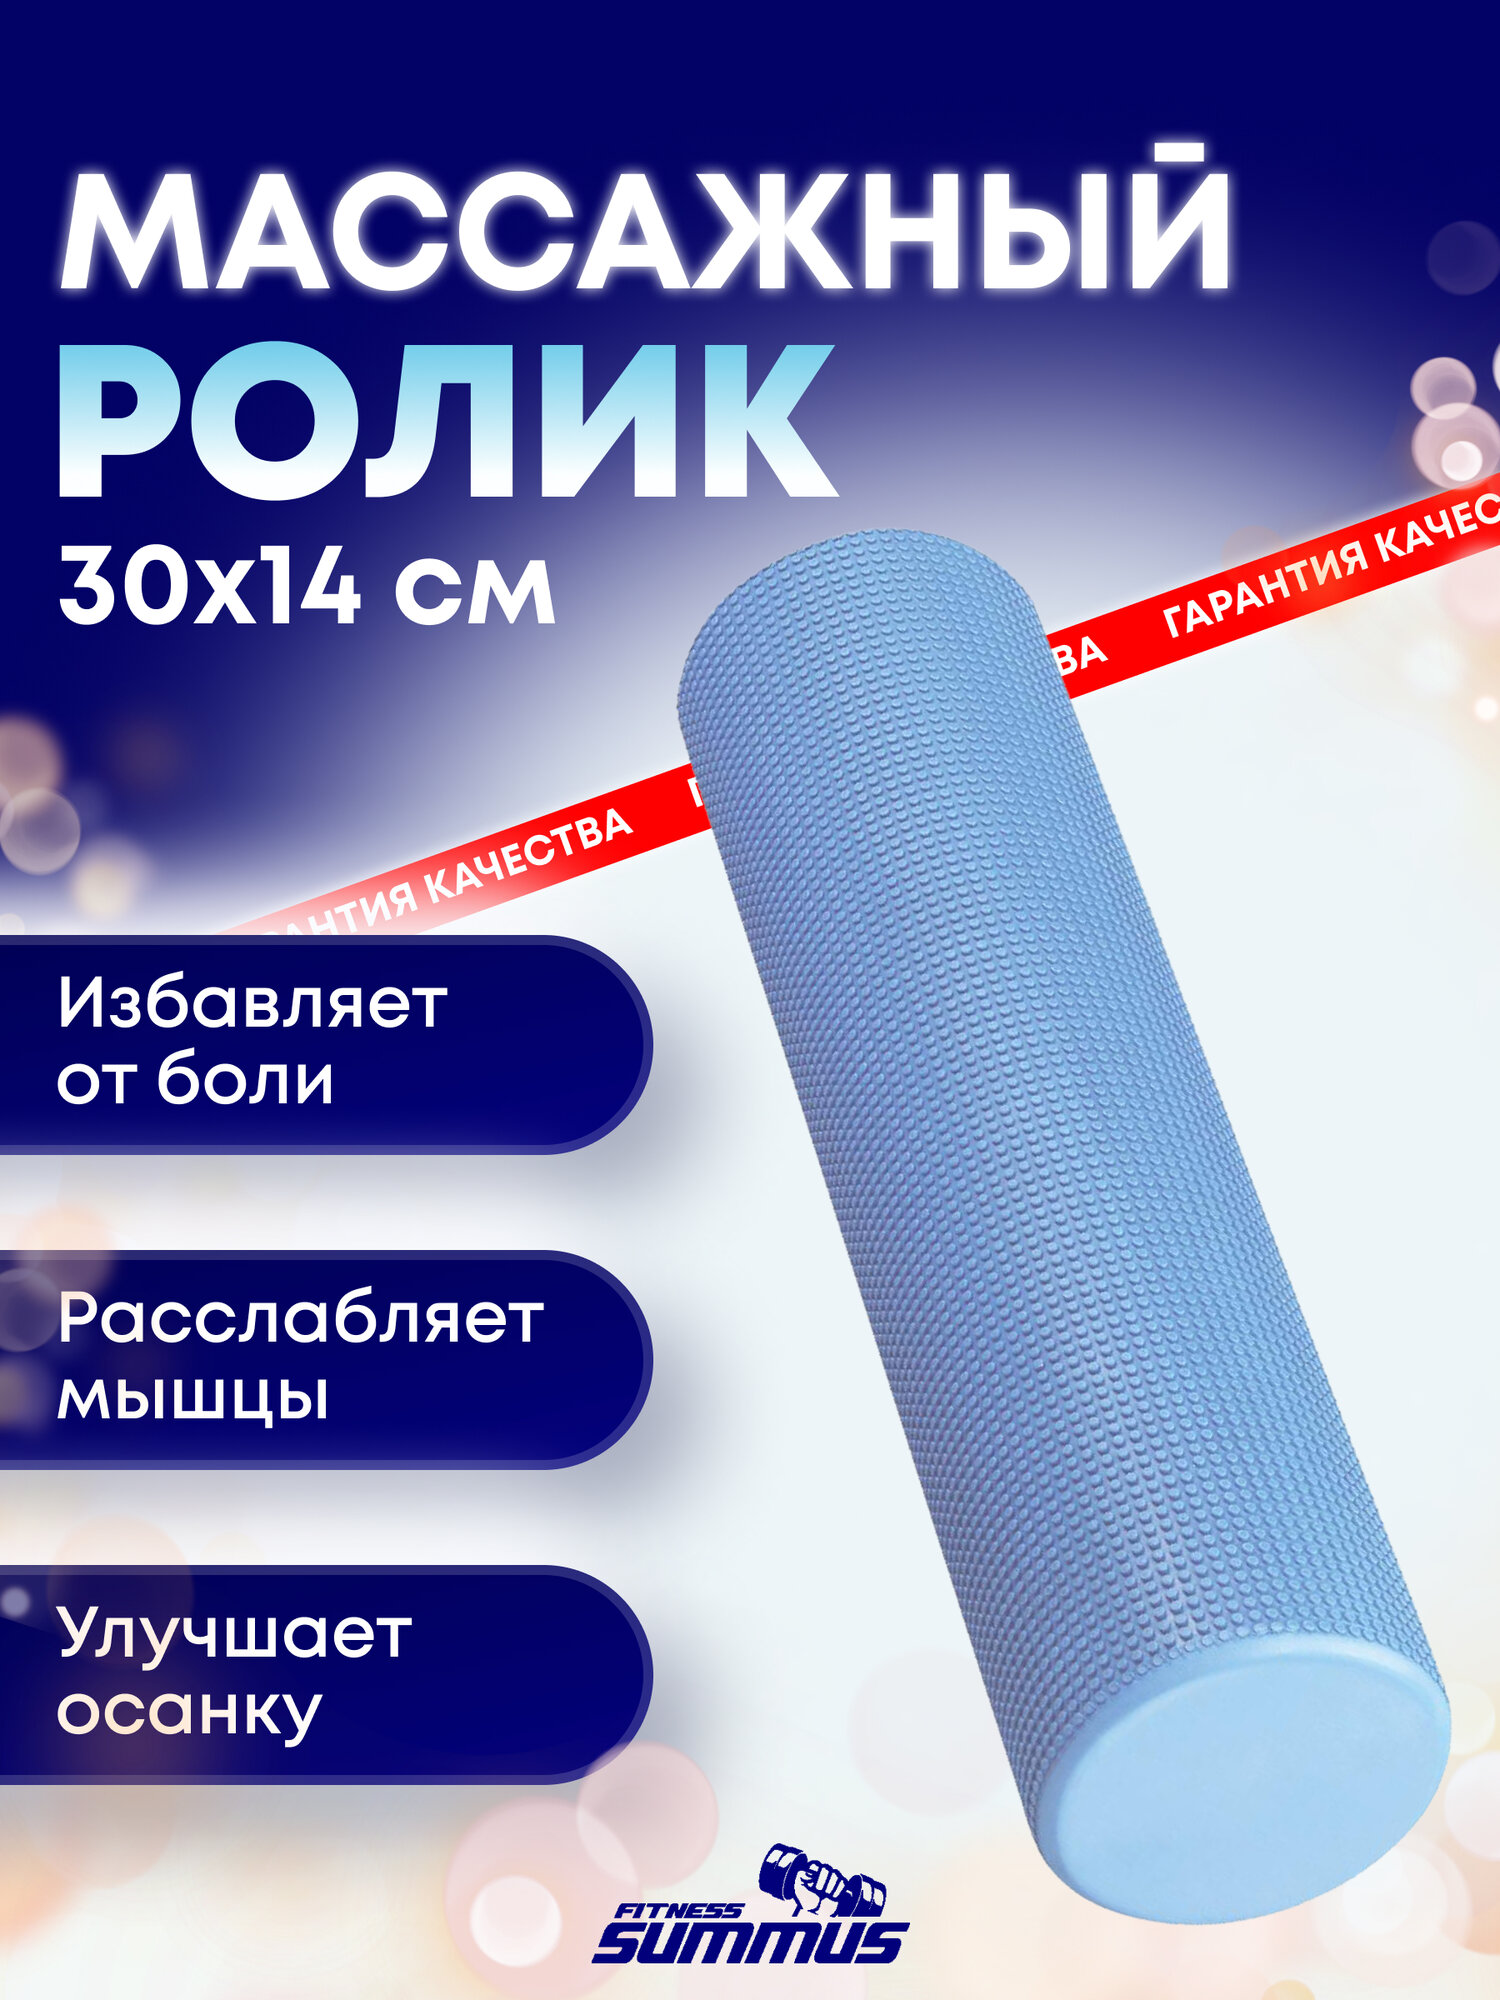 Спортивный ролик-валик Summus для фитнеса, МФР, массажный антицеллюлитный, болстер для йоги 30х14 см, арт. 600-067-blue, синий